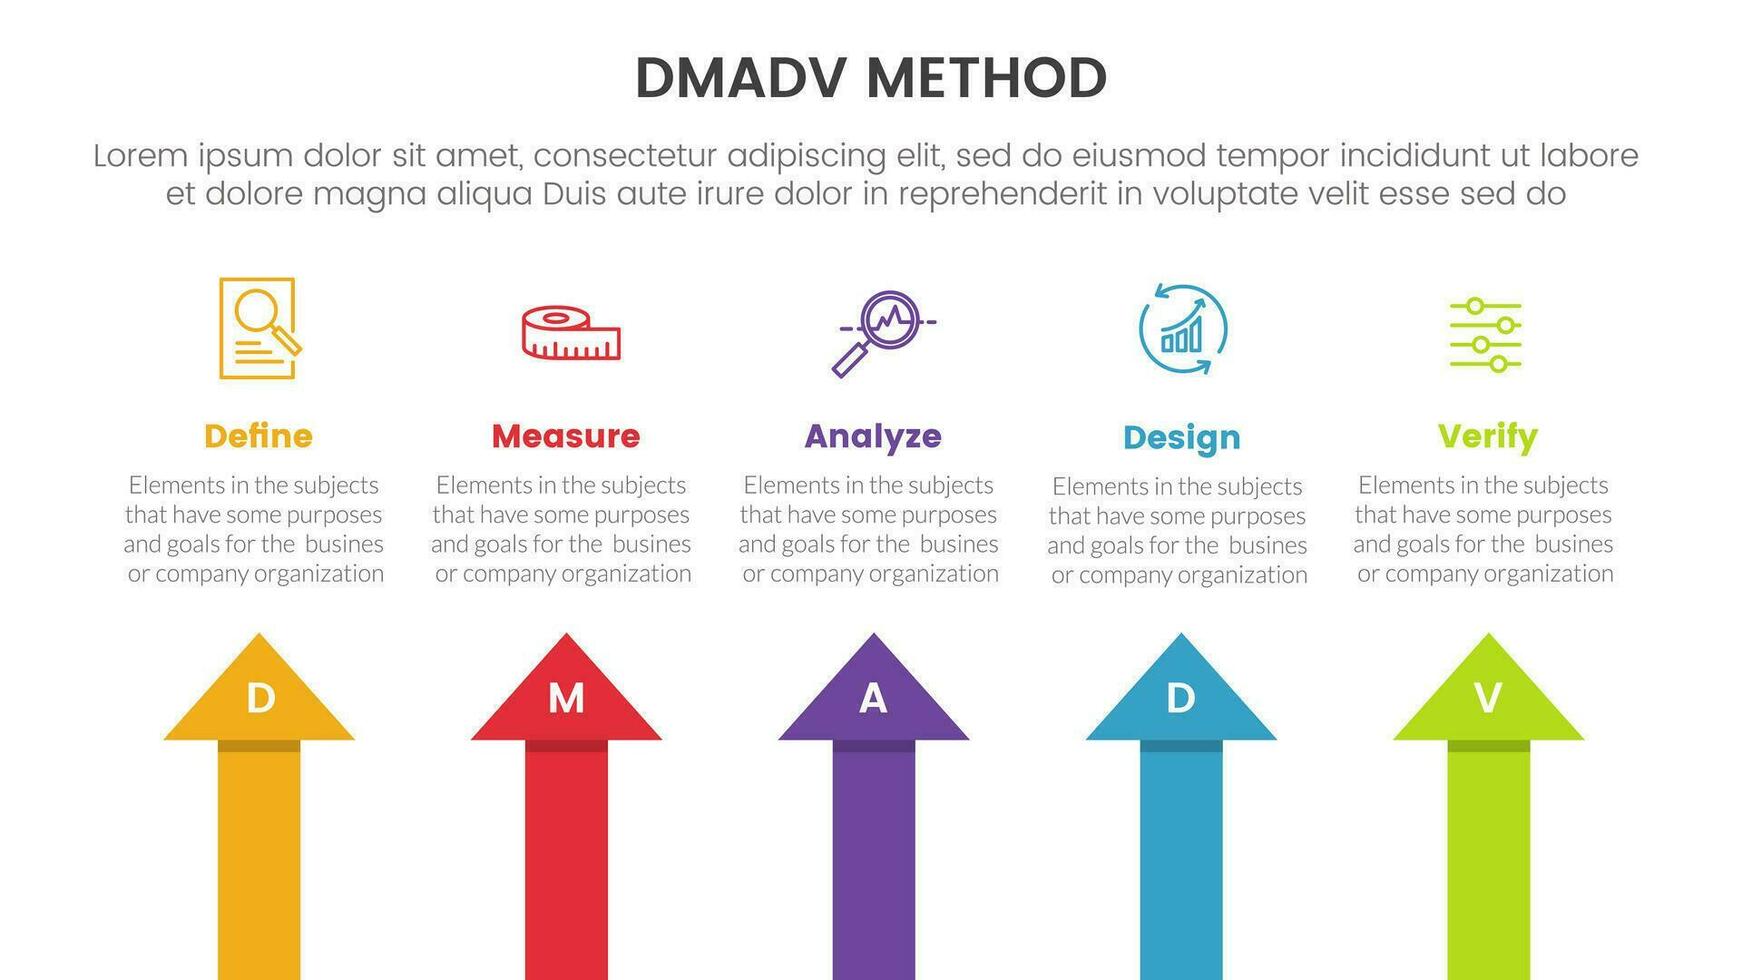 dmadv seis sigma marco de referencia metodología infografía con flecha parte superior dirección 5 5 punto lista para diapositiva presentación vector